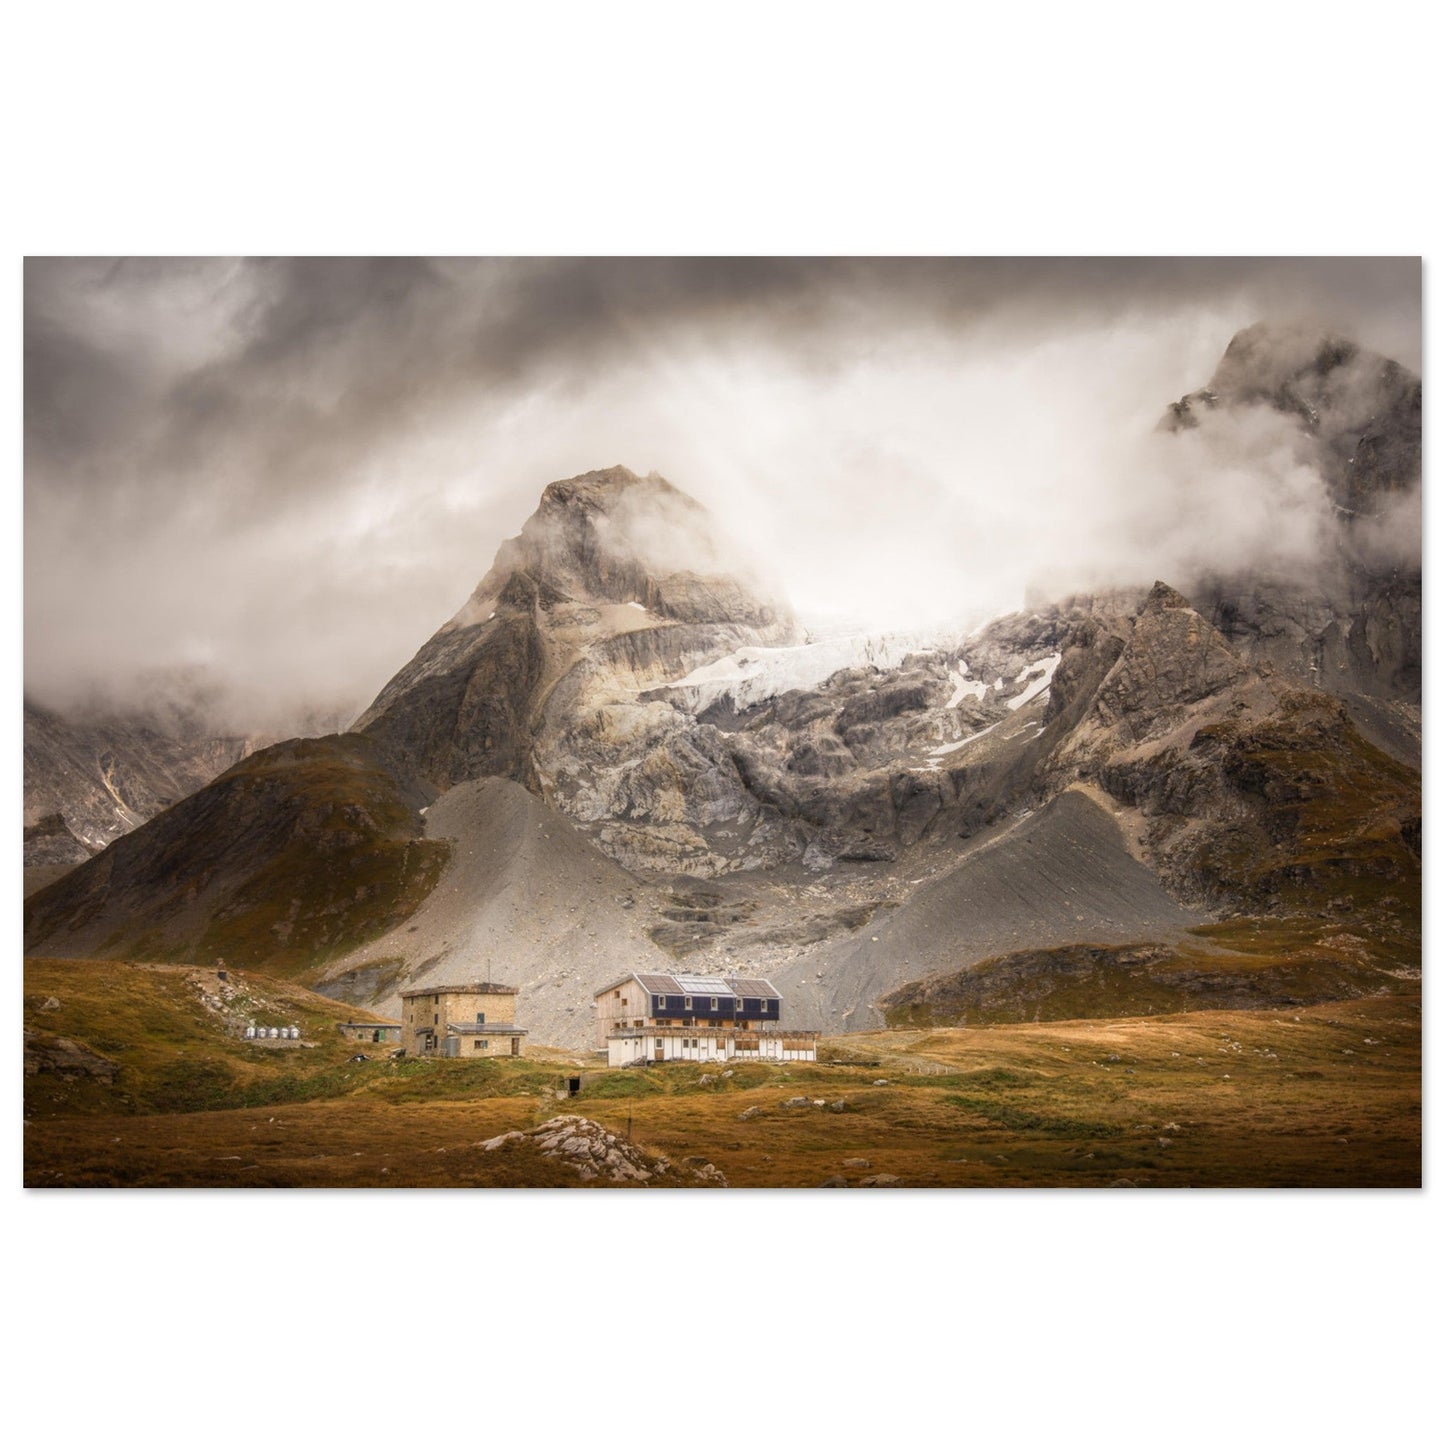 Vente Photo du refuge de la Vanoise (ex. Felix Faure) et de la Grande Casse - Tableau photo alu montagne